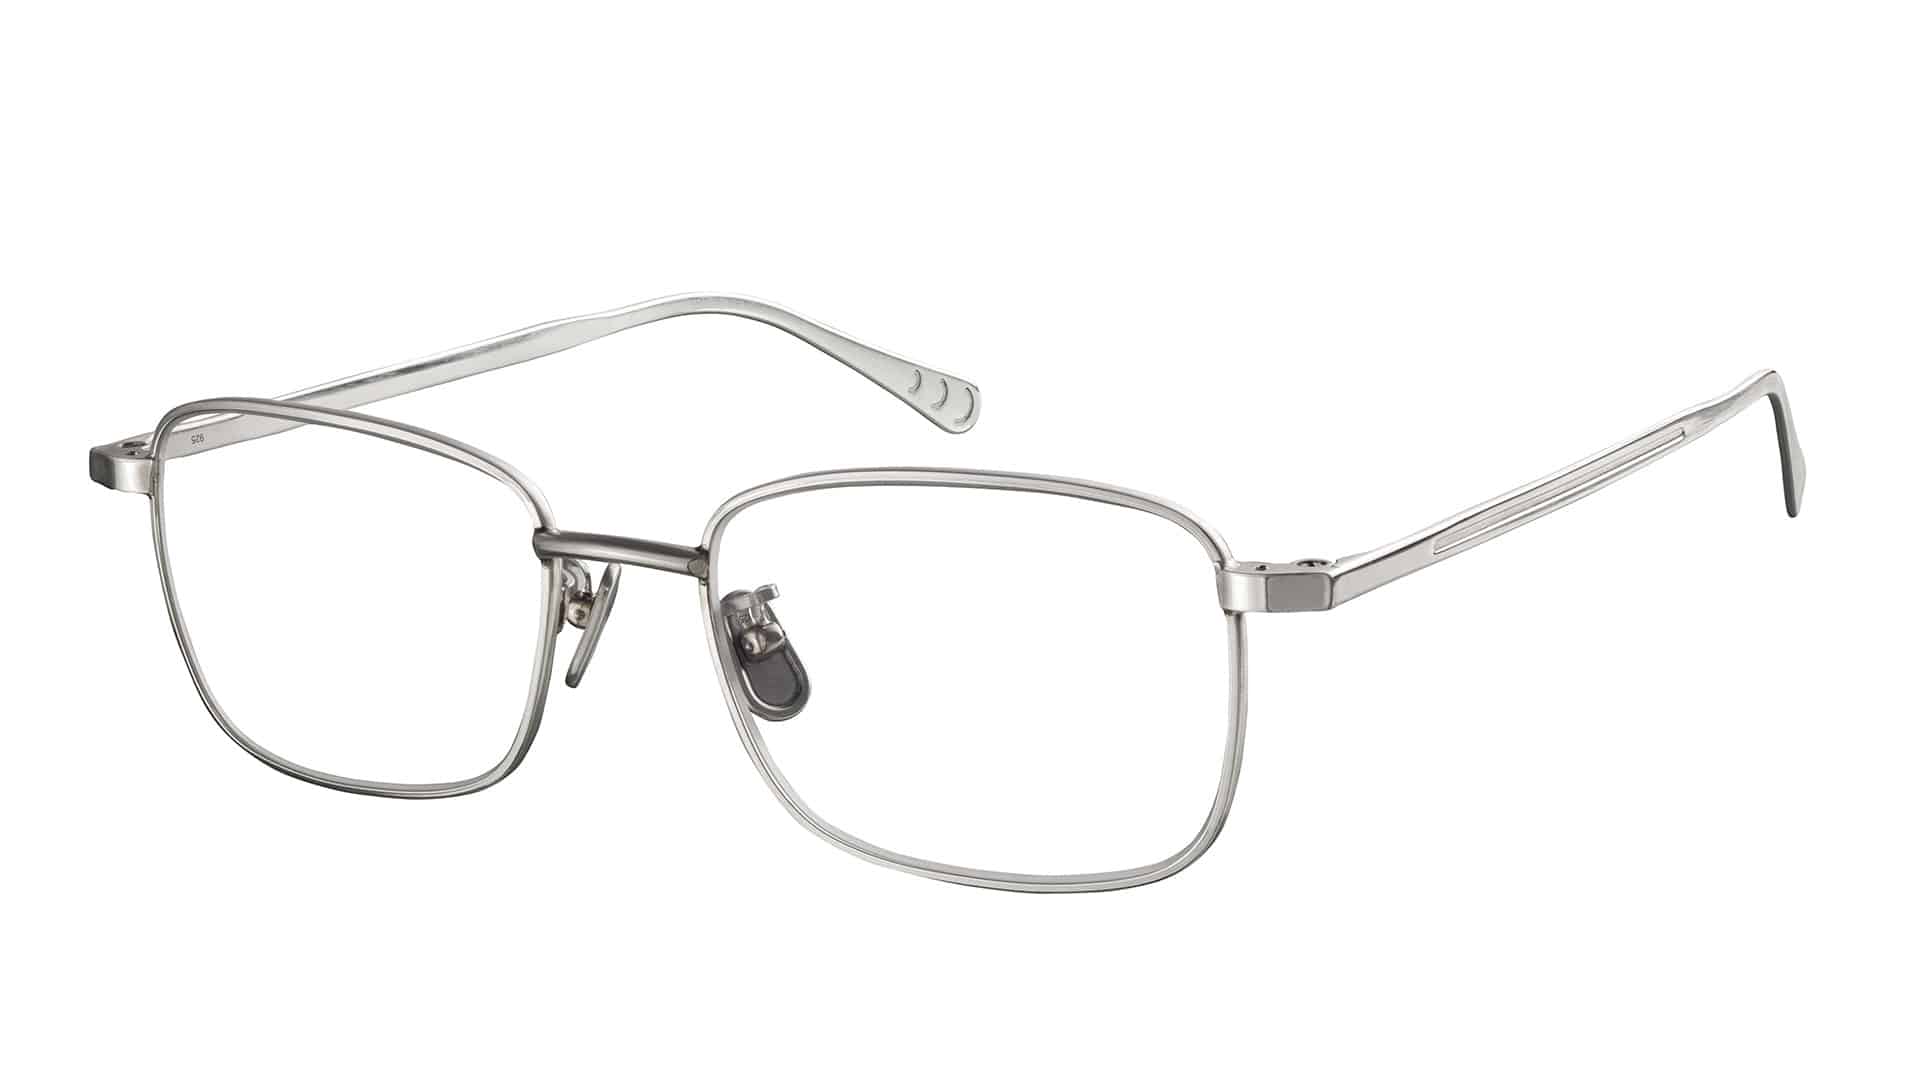 Moderne, randlose Brille auf Weiß.